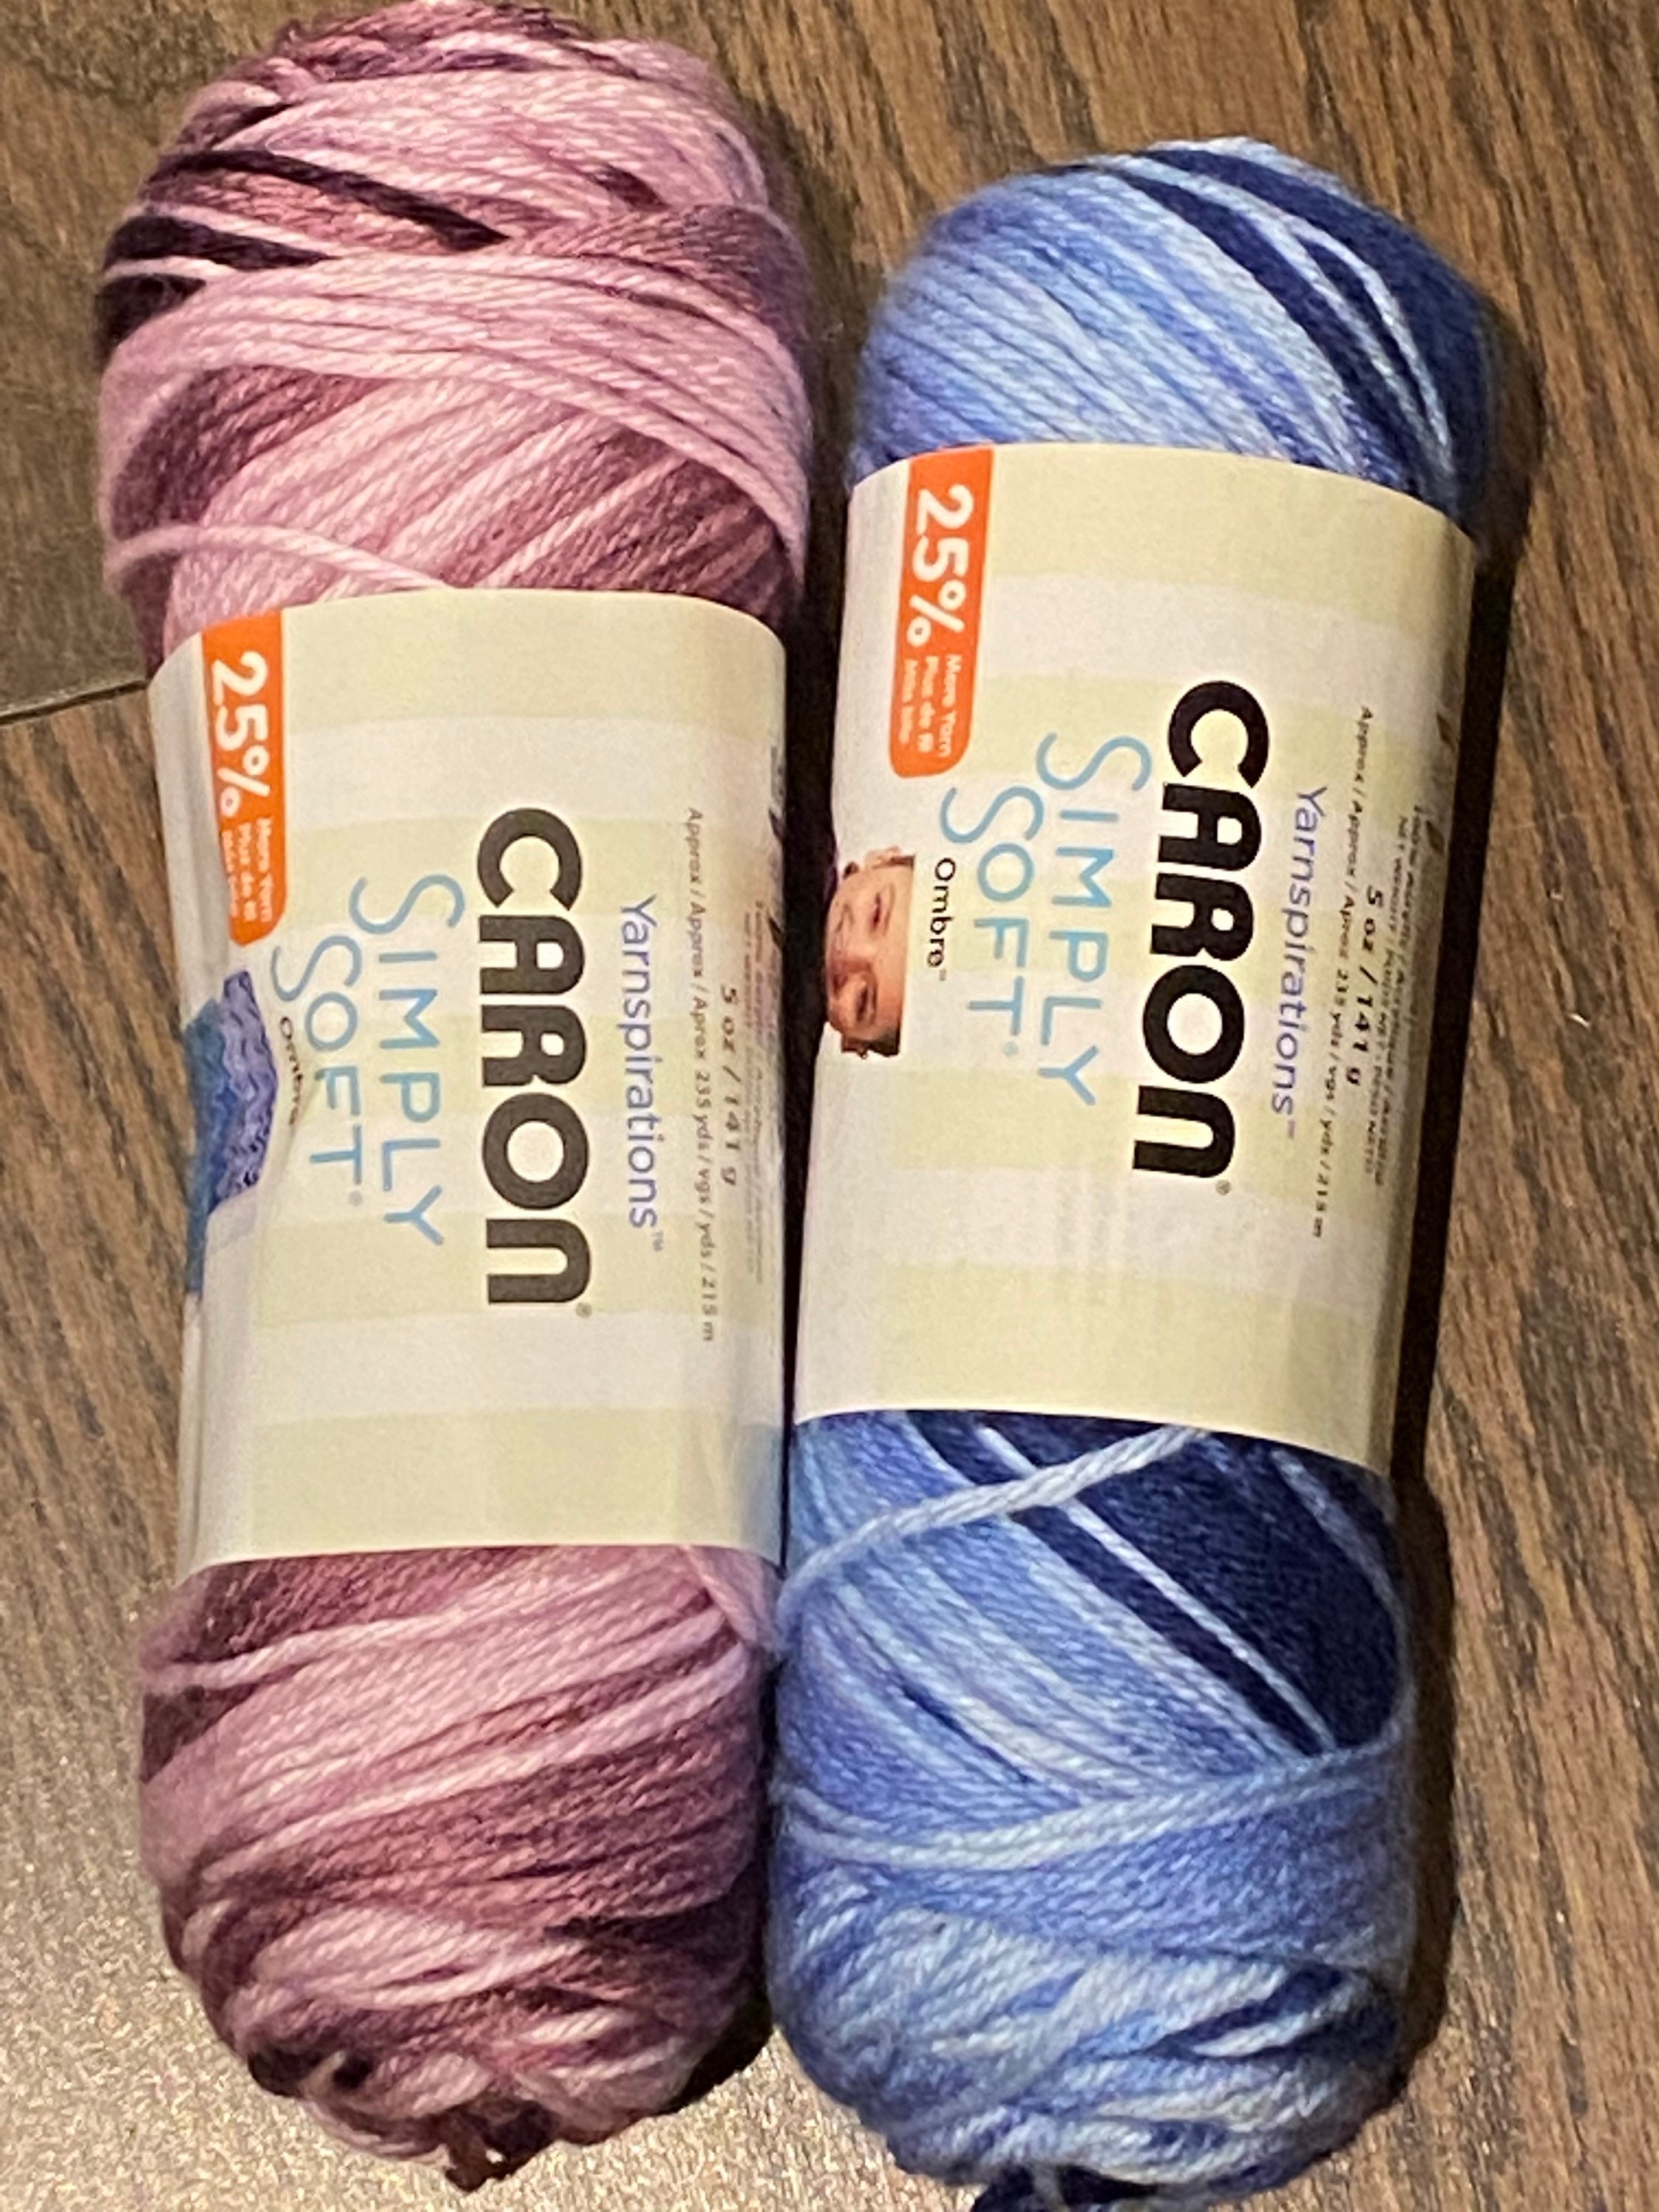 Caron Simply Soft 9703 bone Yarn 